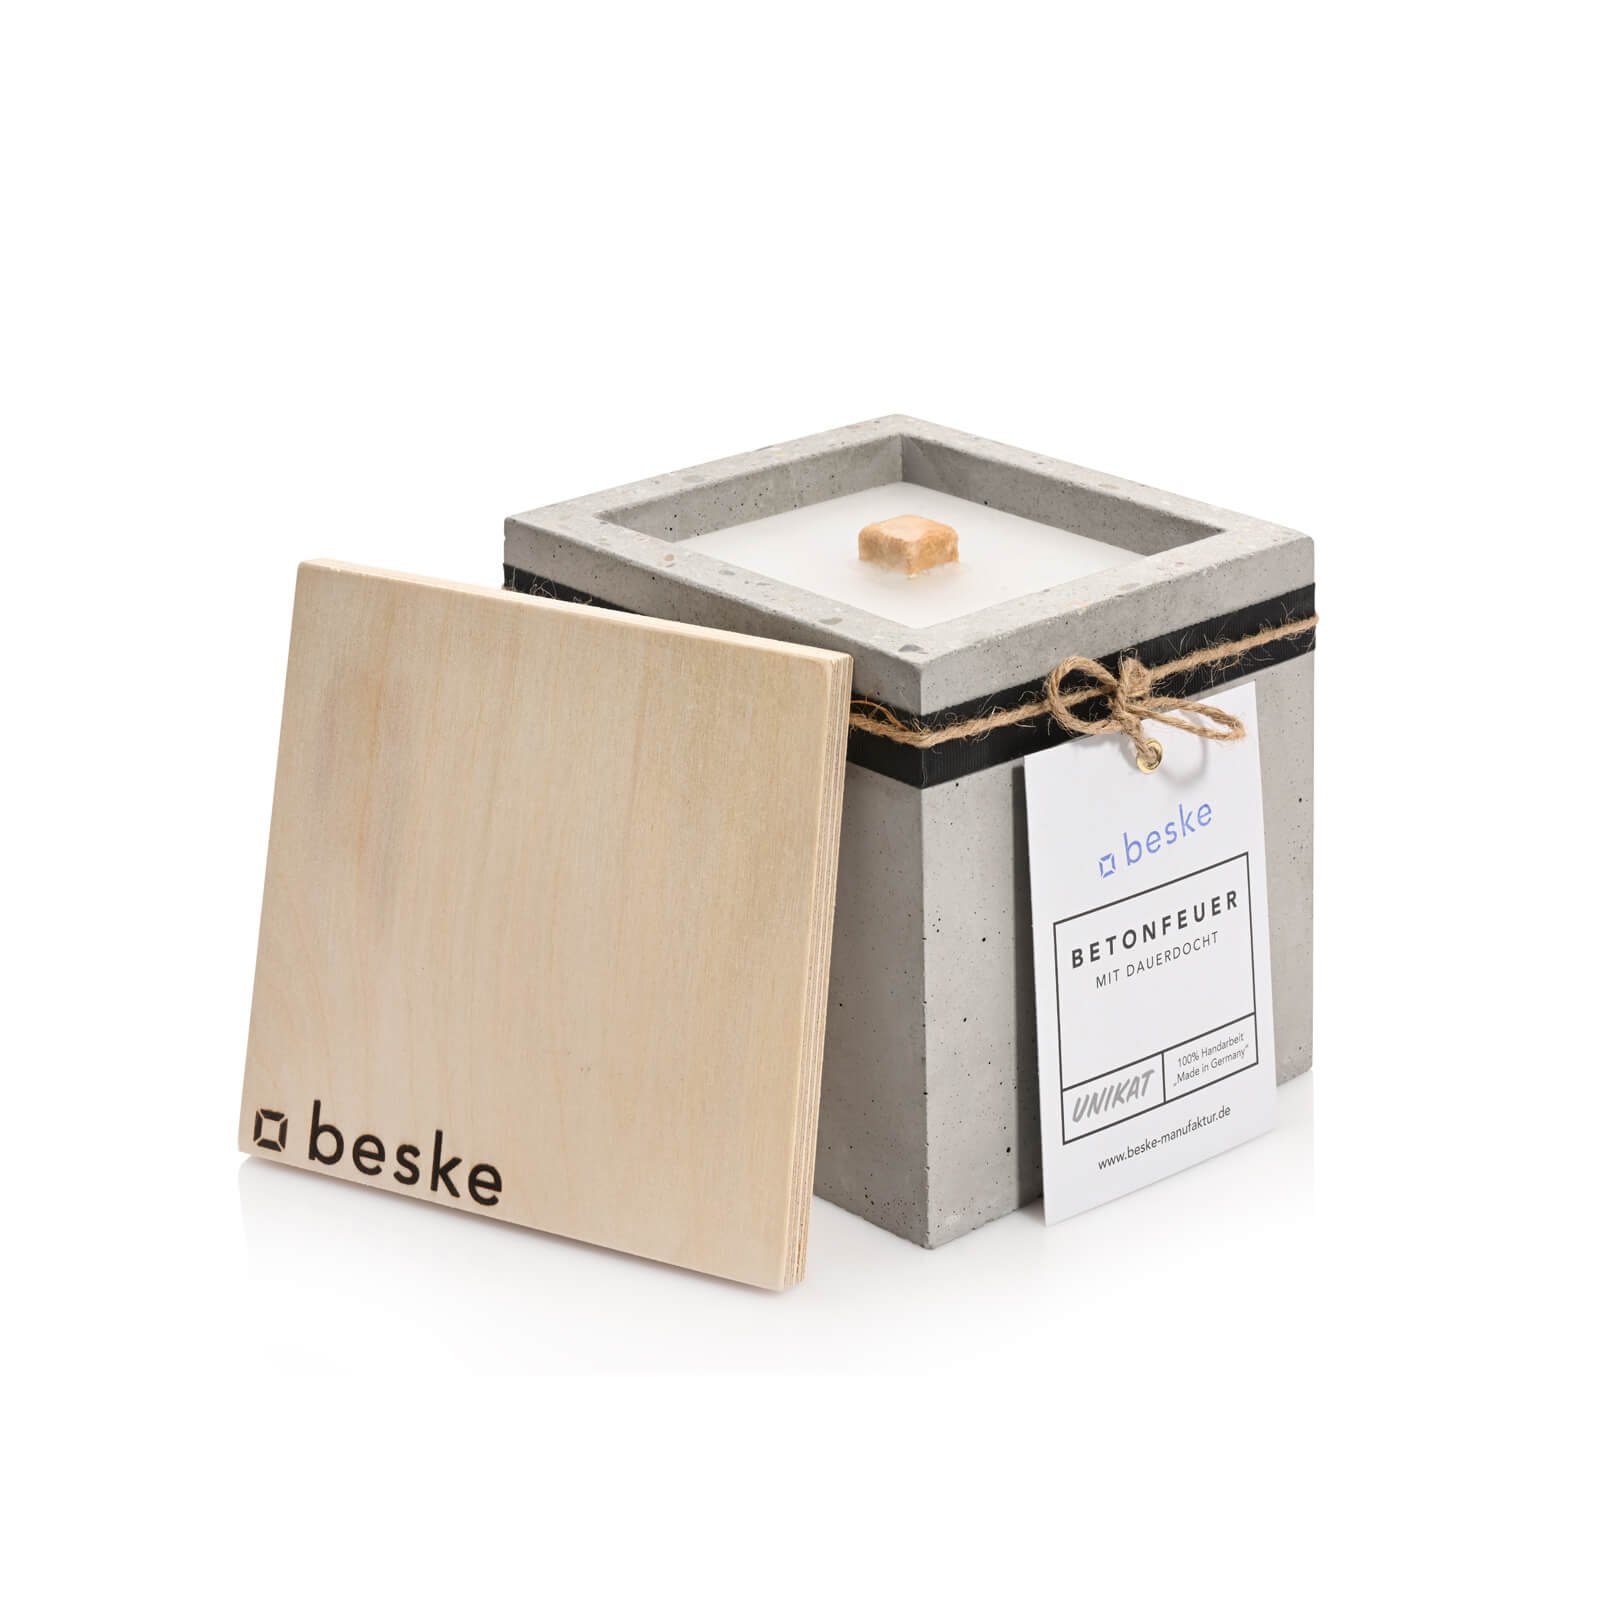 beske Gartenfackel Betonfeuer® - Kea mit Dauerdocht Kerzenfresser Tischfeuer (13x13x13)